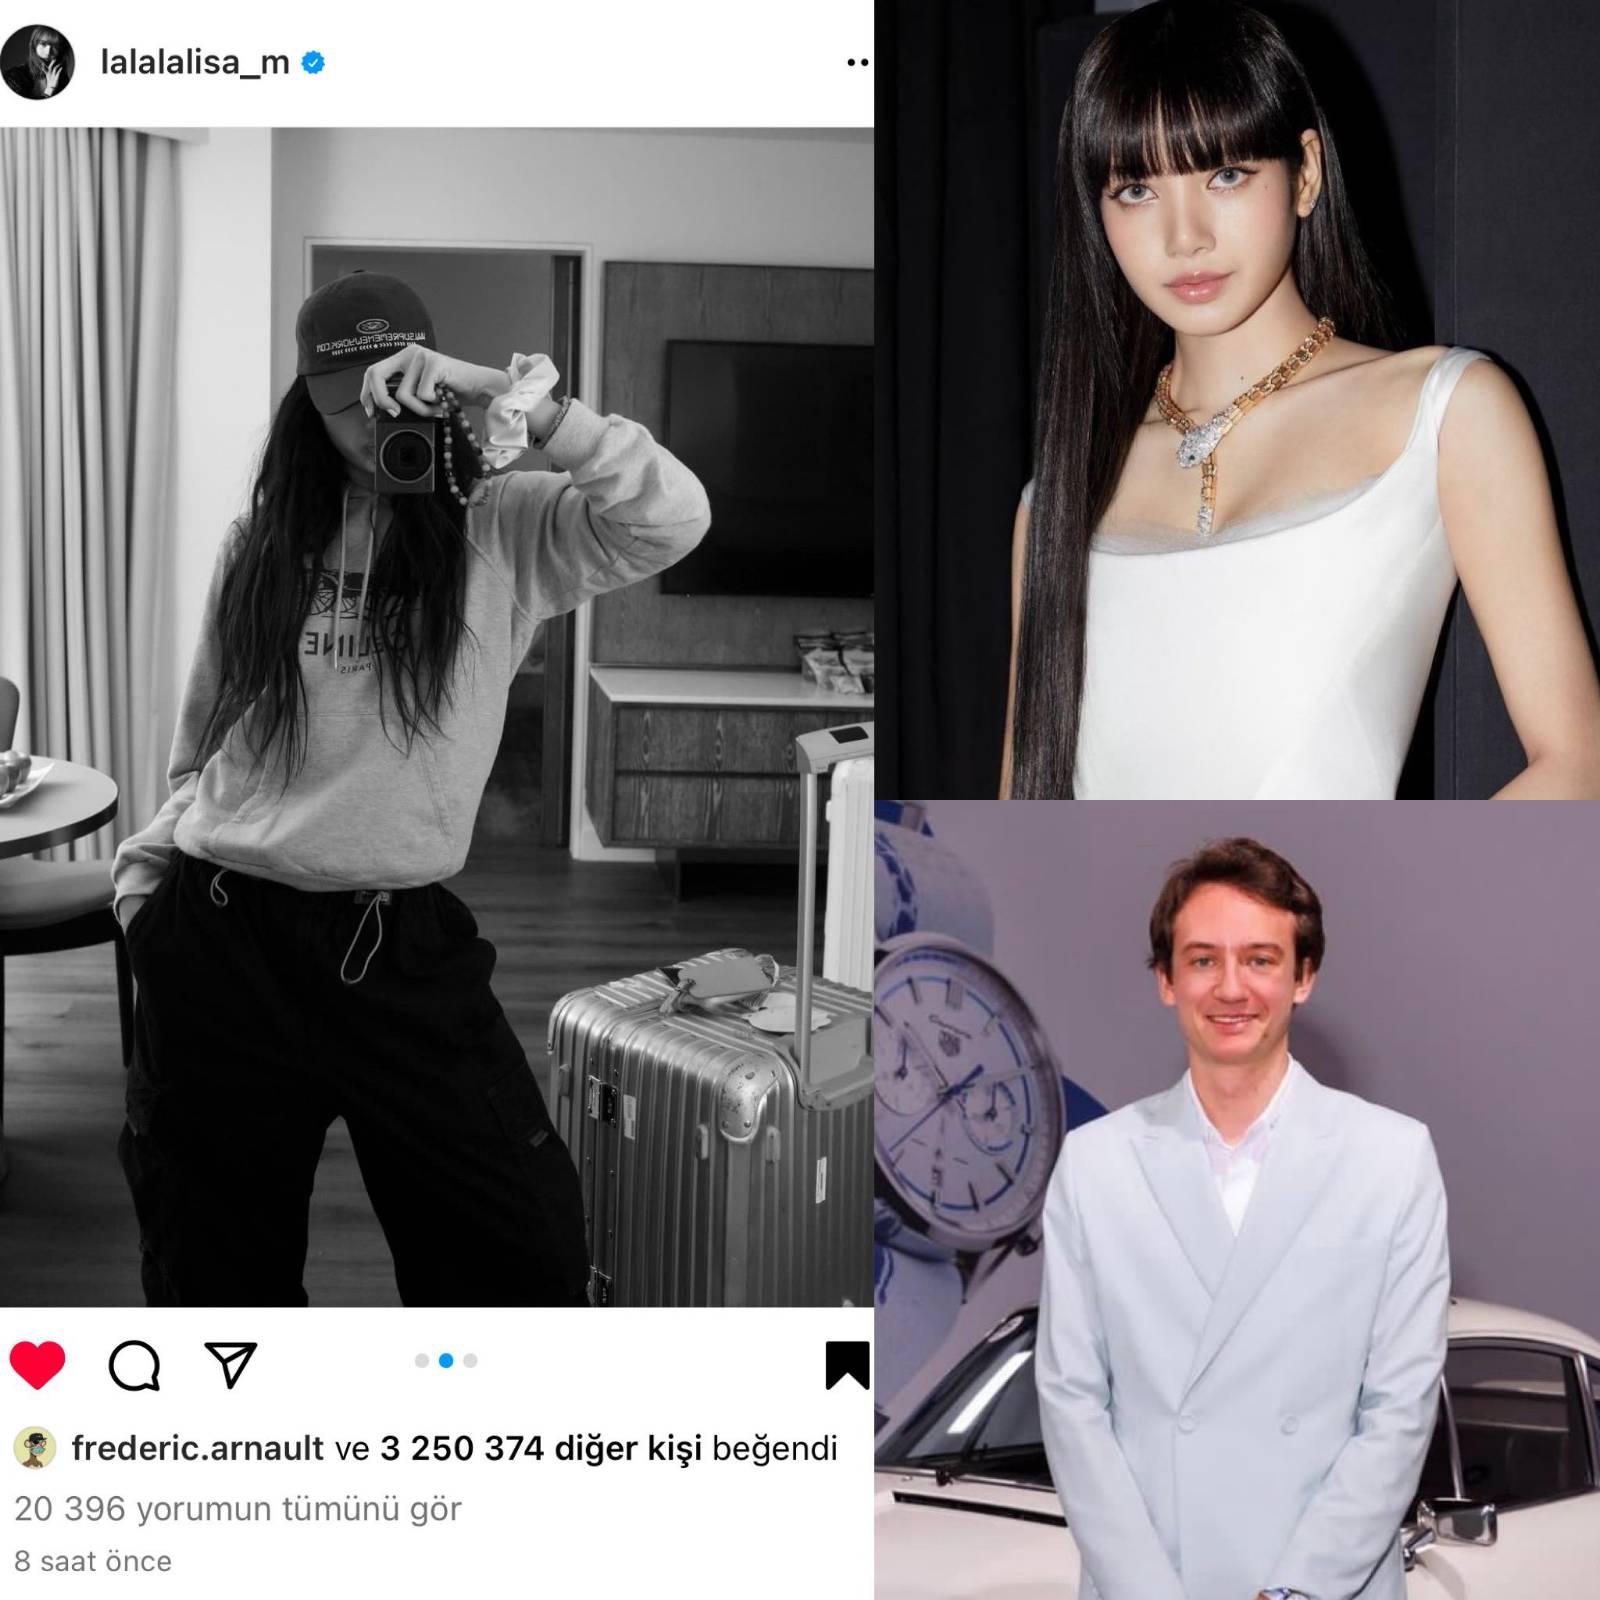 Fans Spot BLACKPINK's Lisa With Rumored Boyfriend Frédéric Arnault In Paris